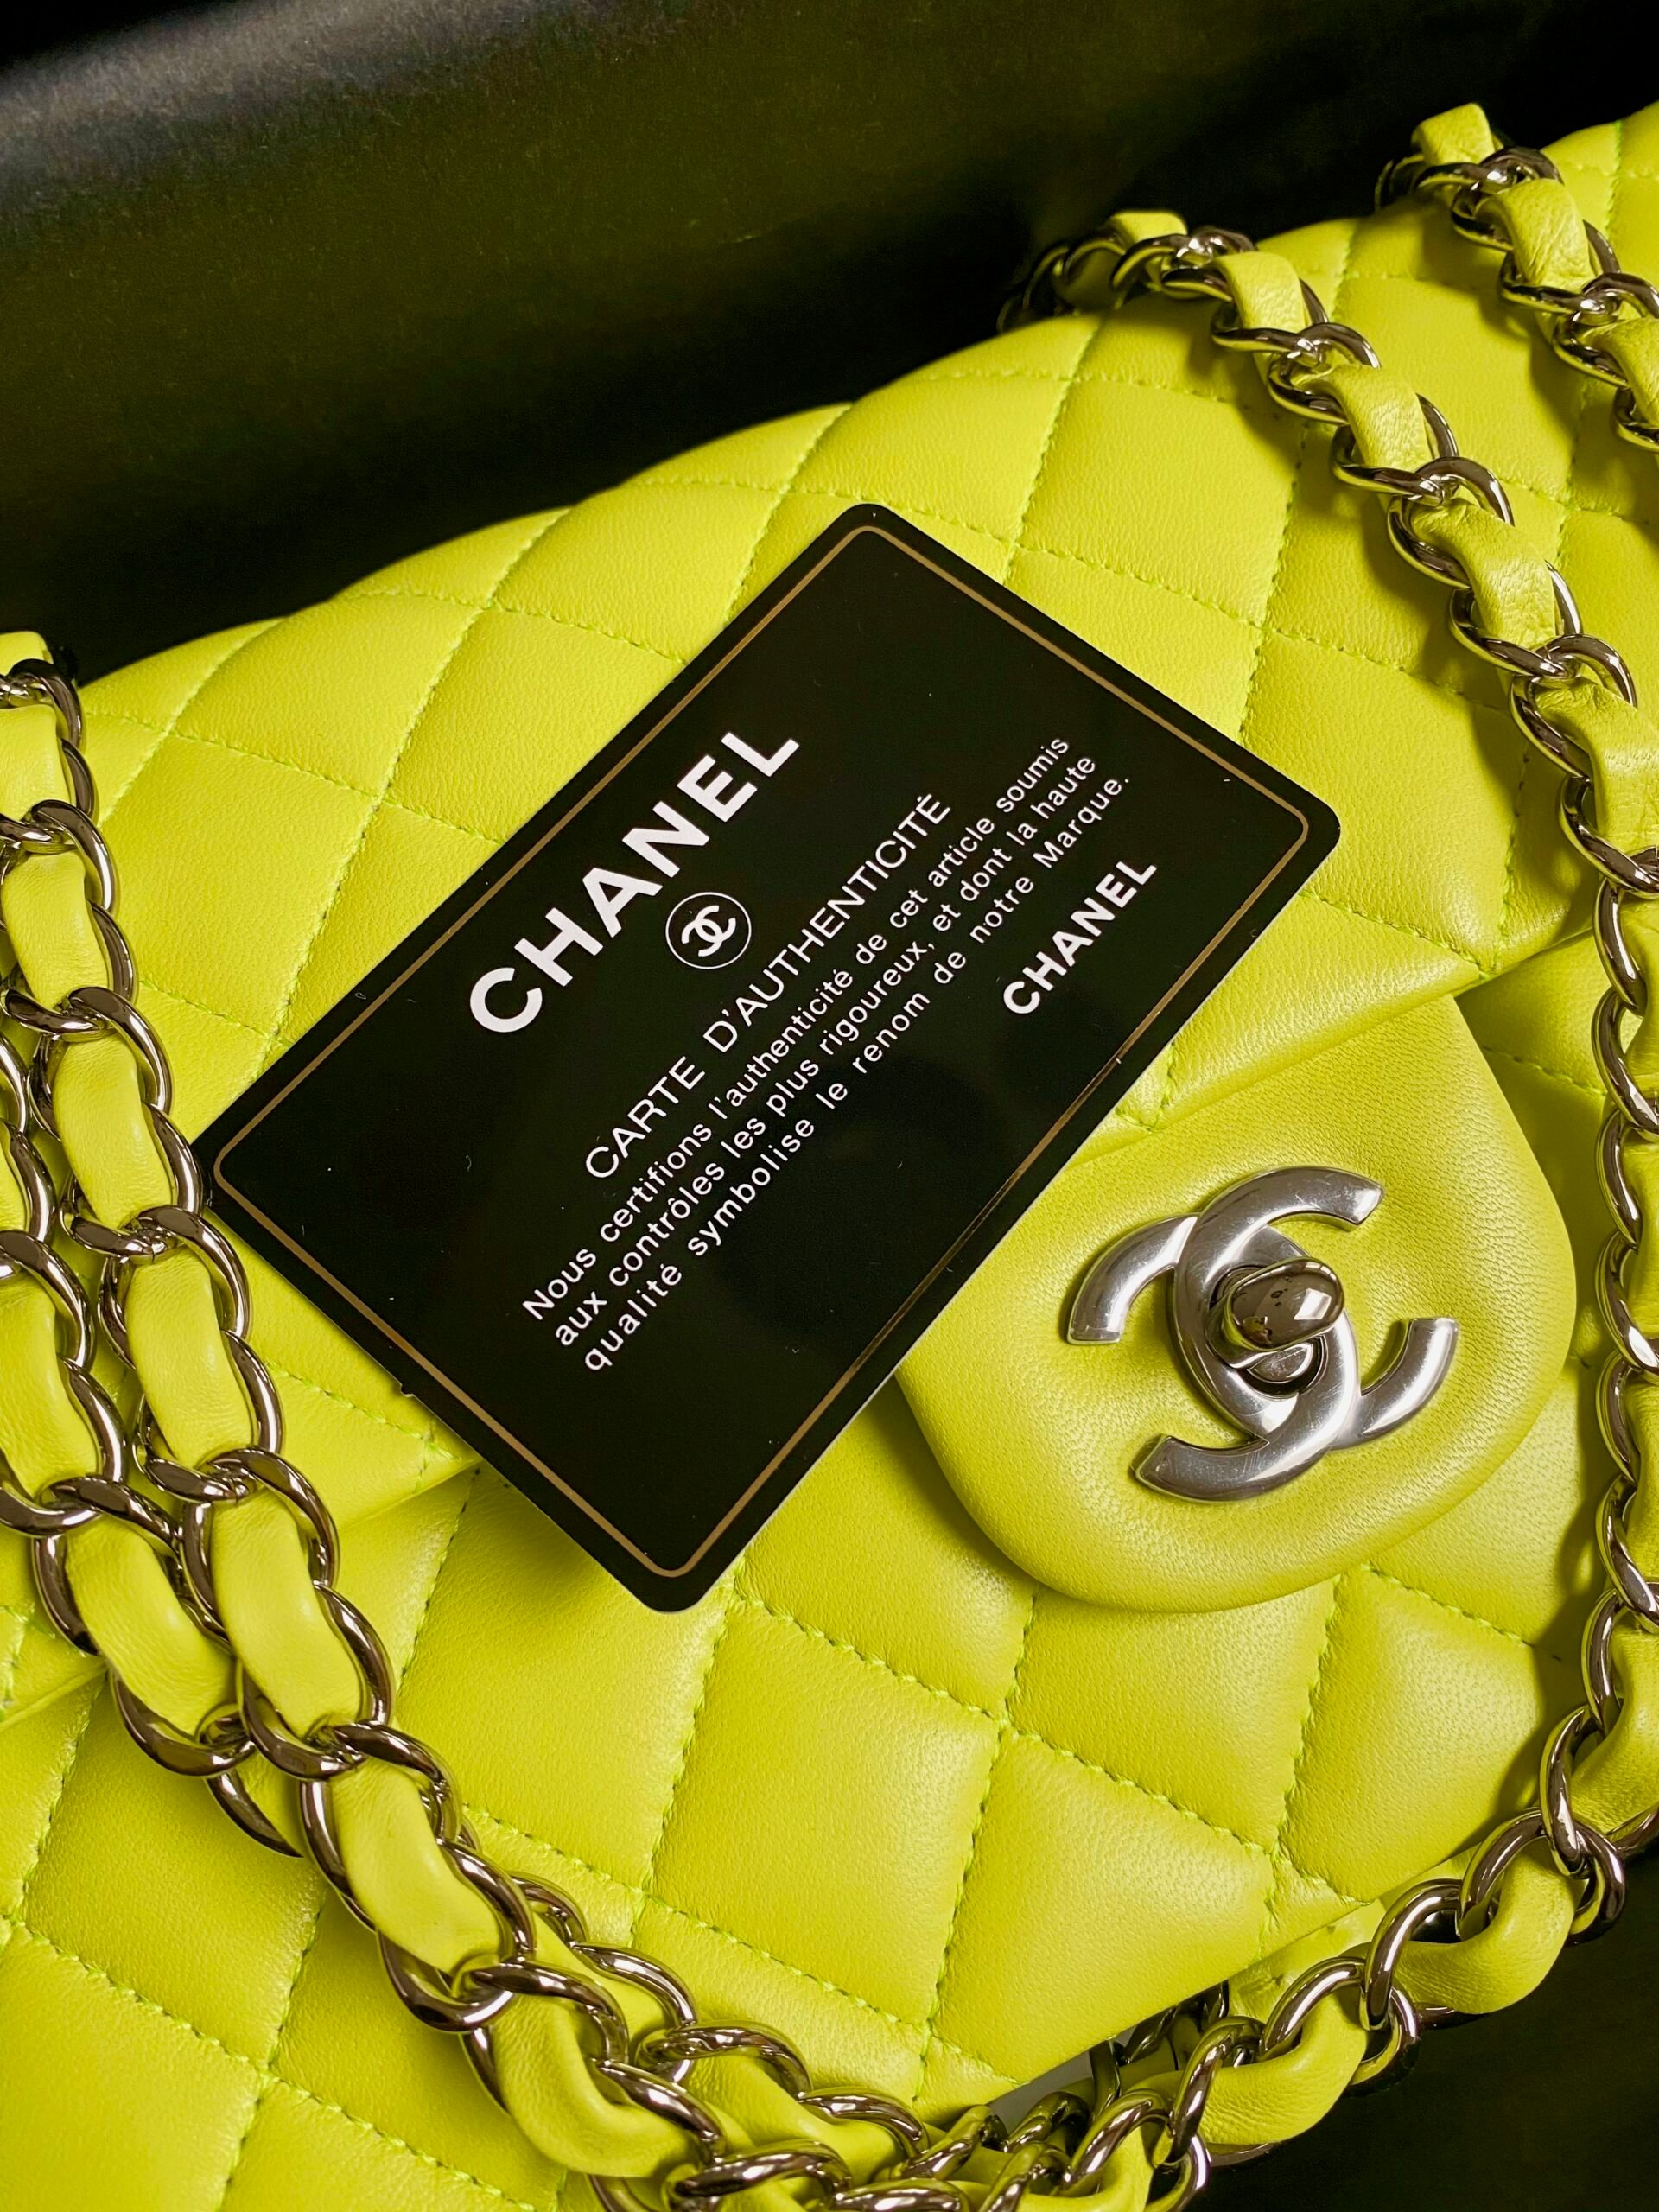 Cách kiểm tra mã code túi Chanel chi tiết  dễ làm  Ruby Luxury